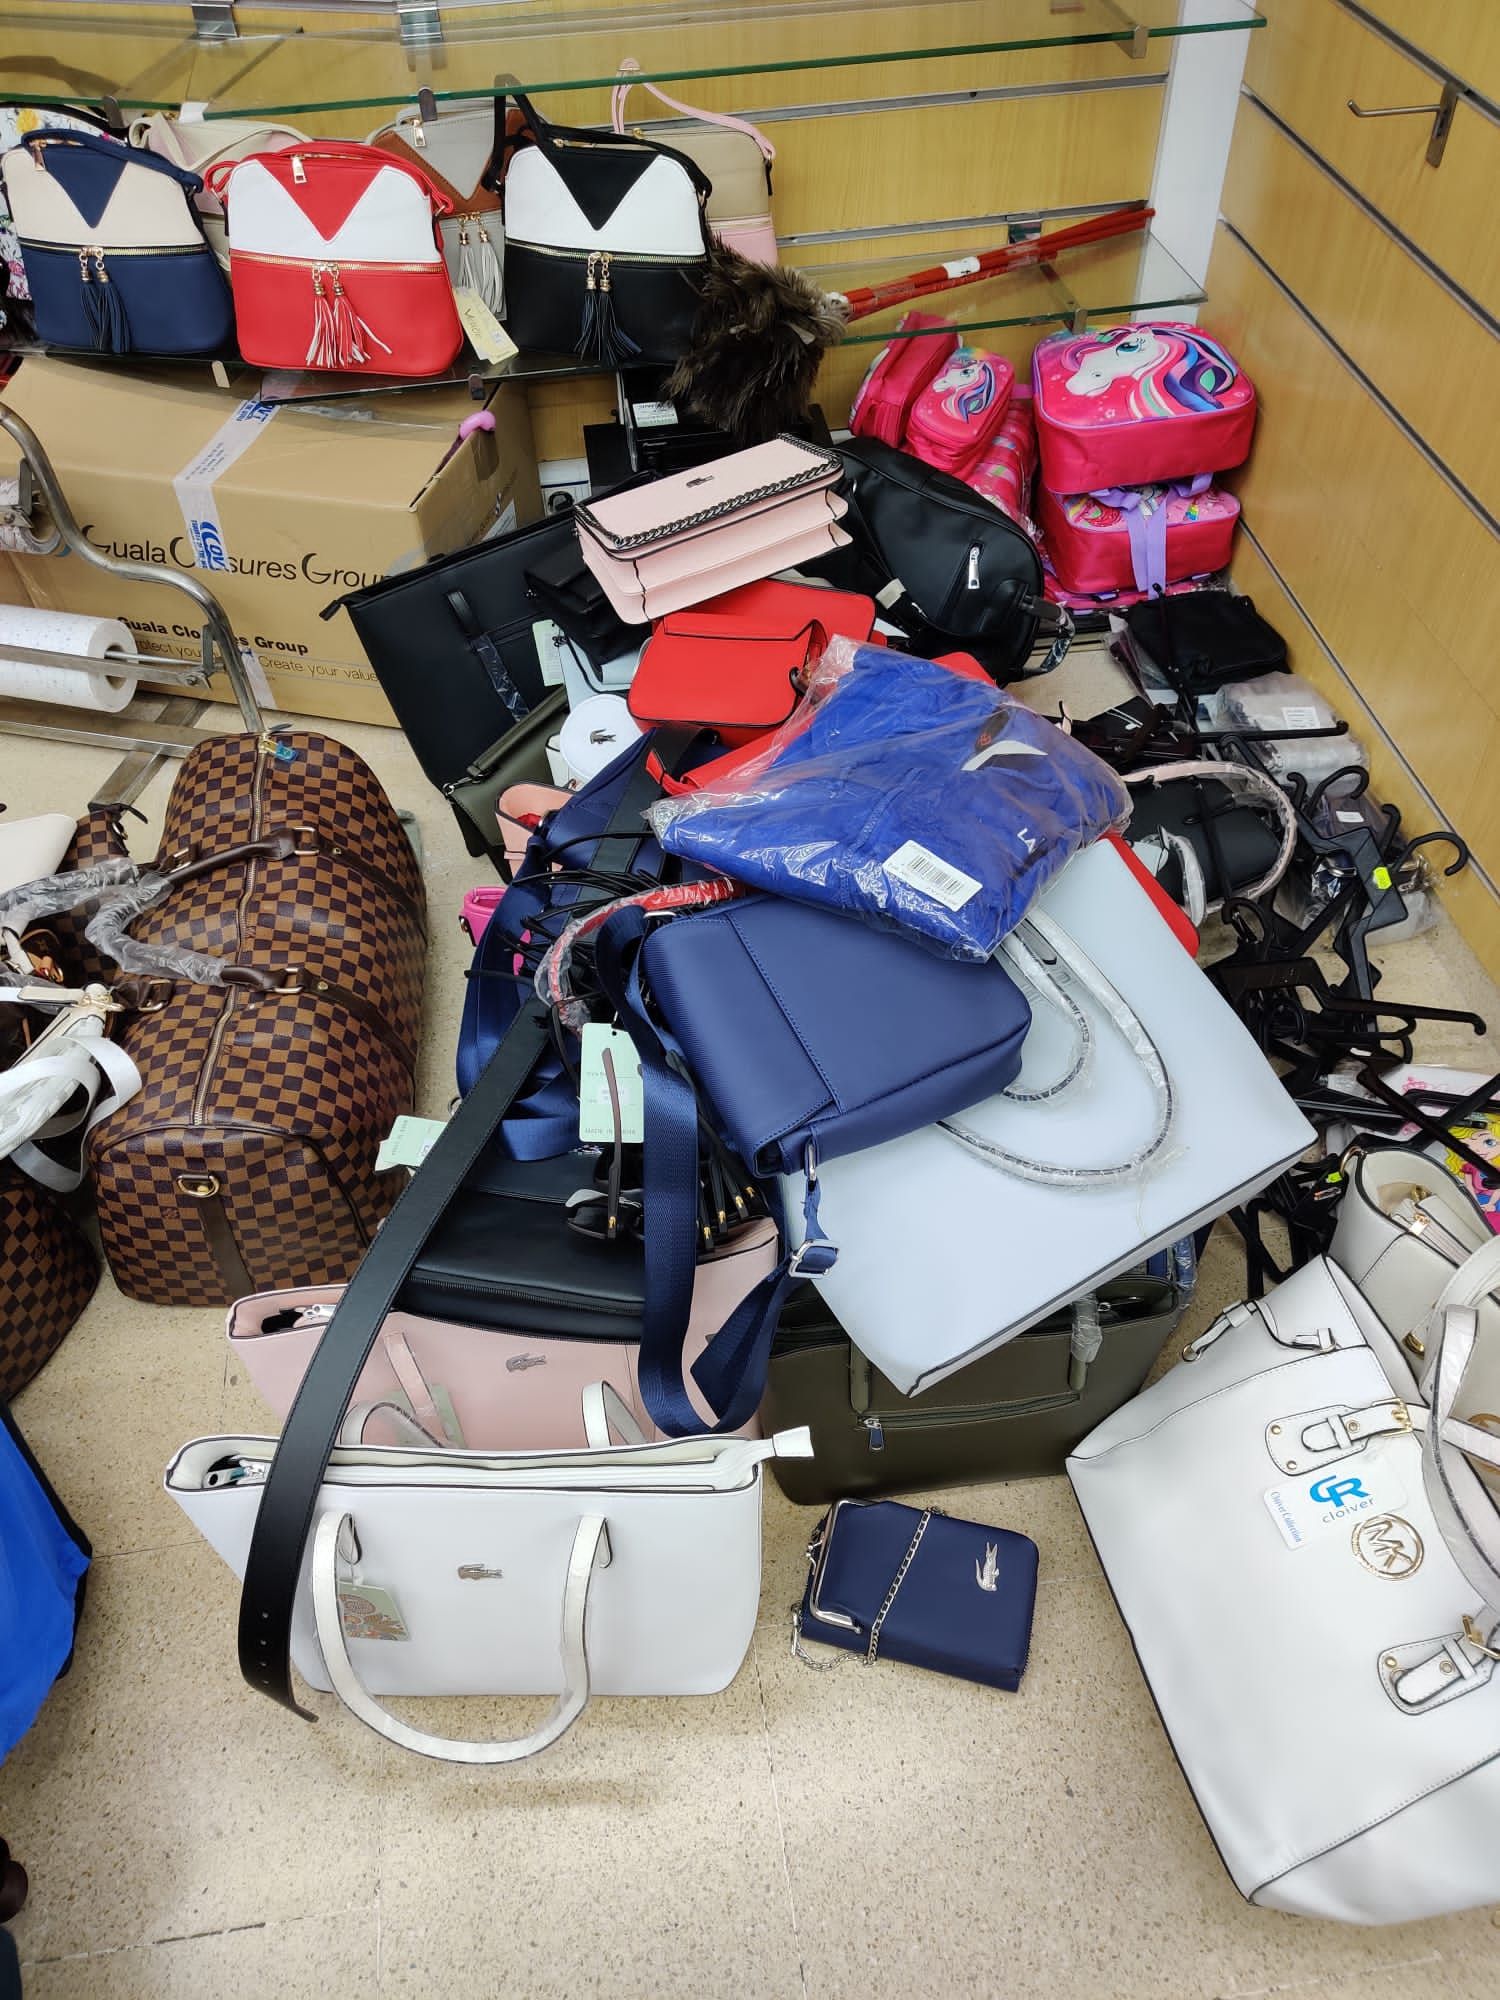 Intervenen més de 18.000 objectes falsificats valorats en mig milió d'euros en botigues de Lloret